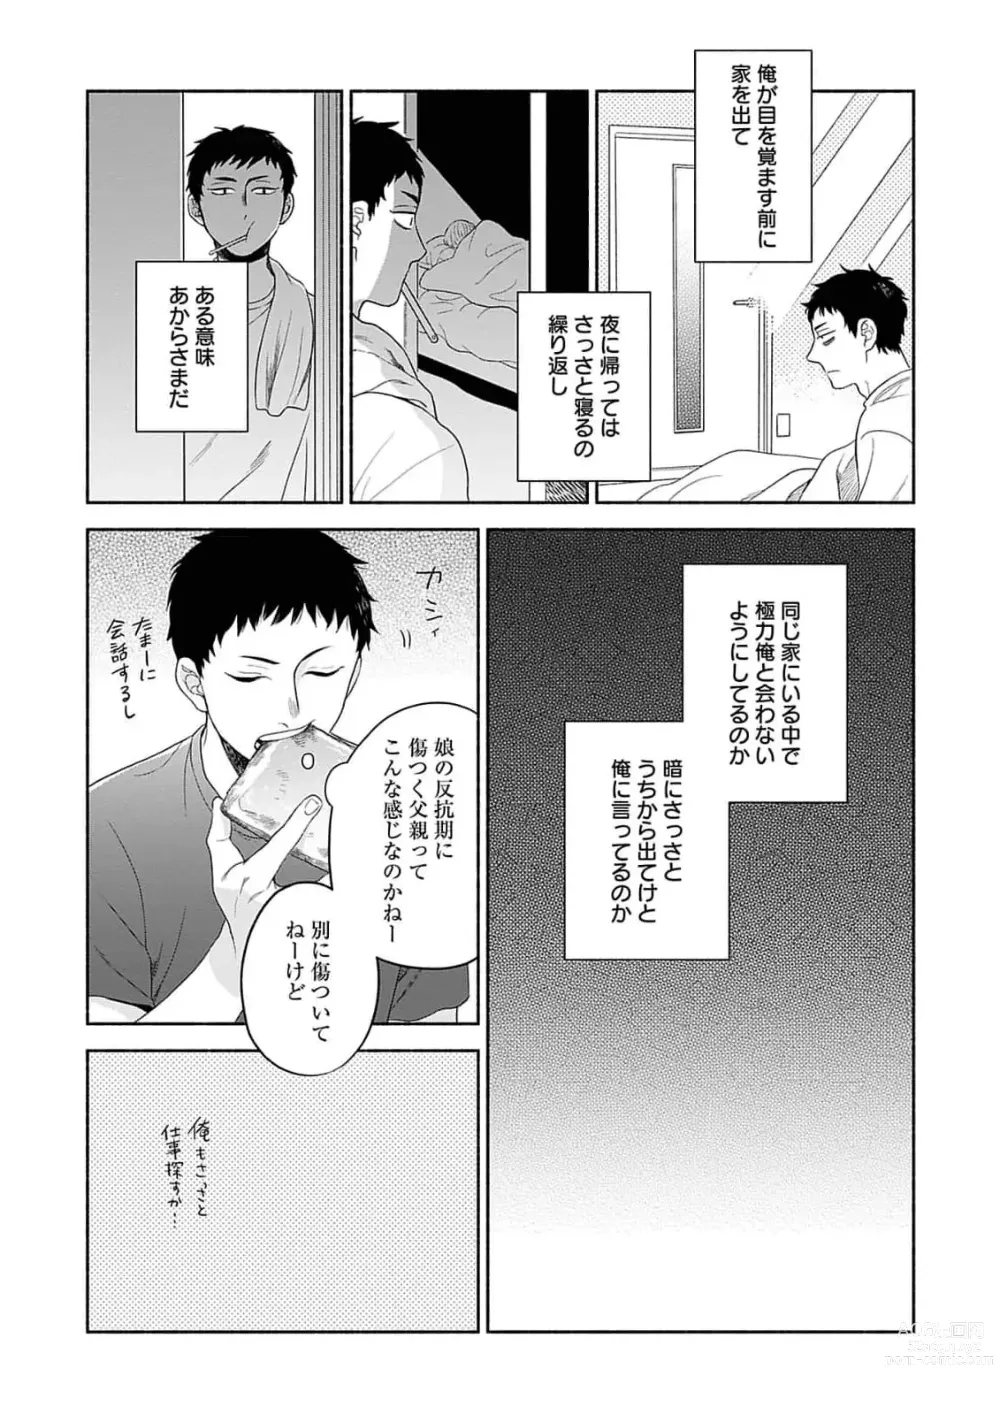 Page 18 of manga Yoru no Kyoudai